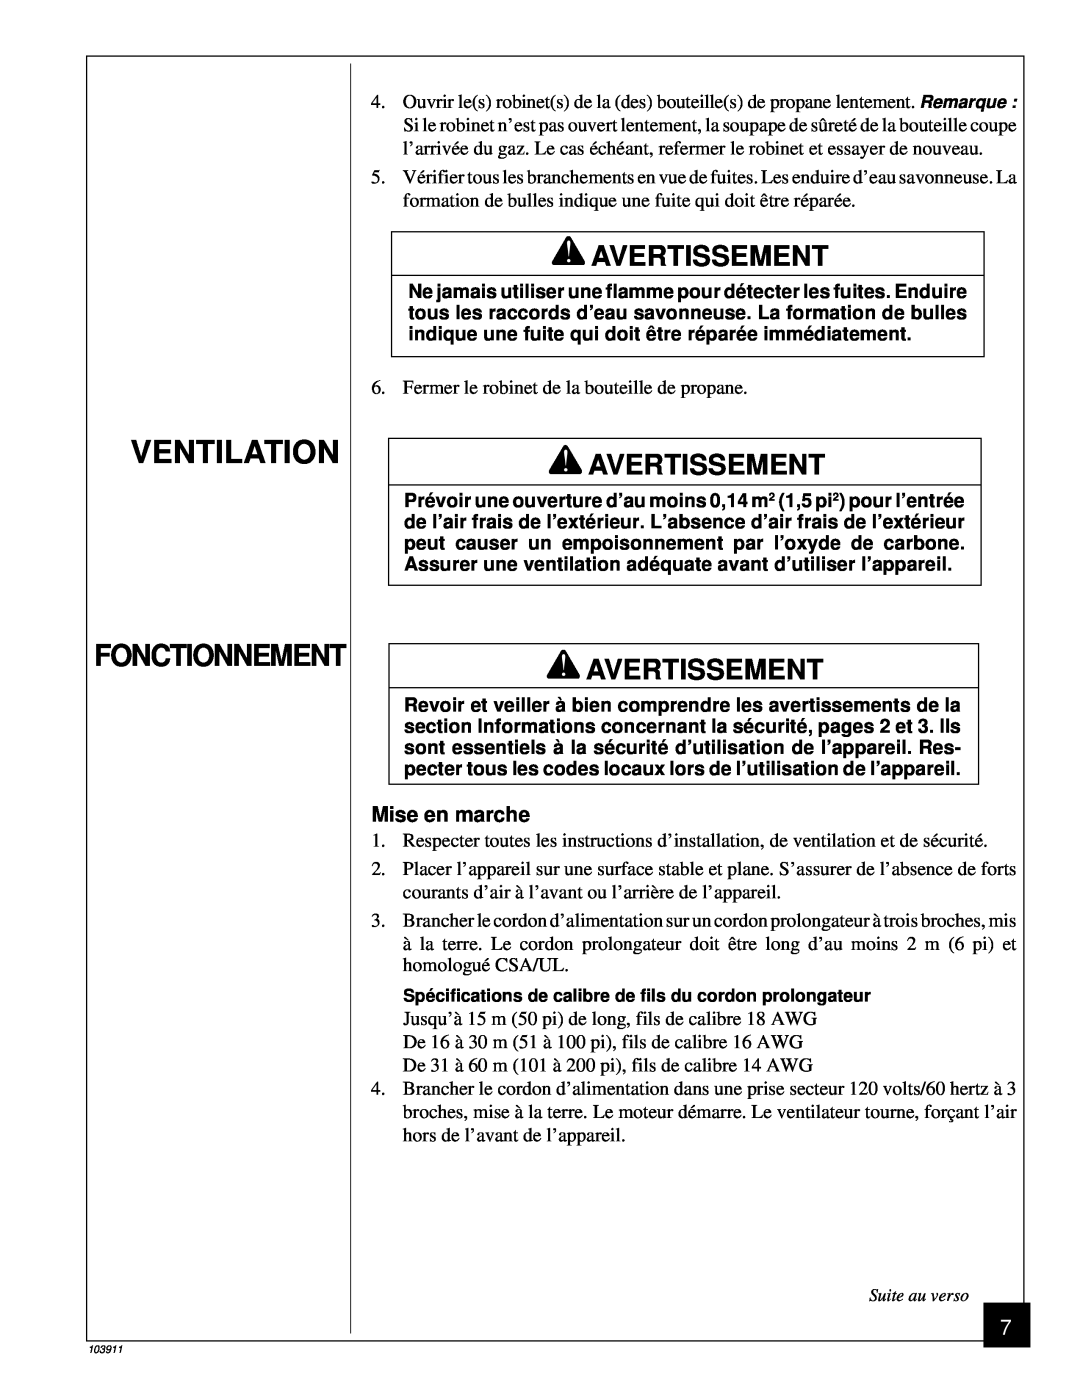 Desa RCLP50B owner manual Ventilation, Fonctionnement, Avertissement 